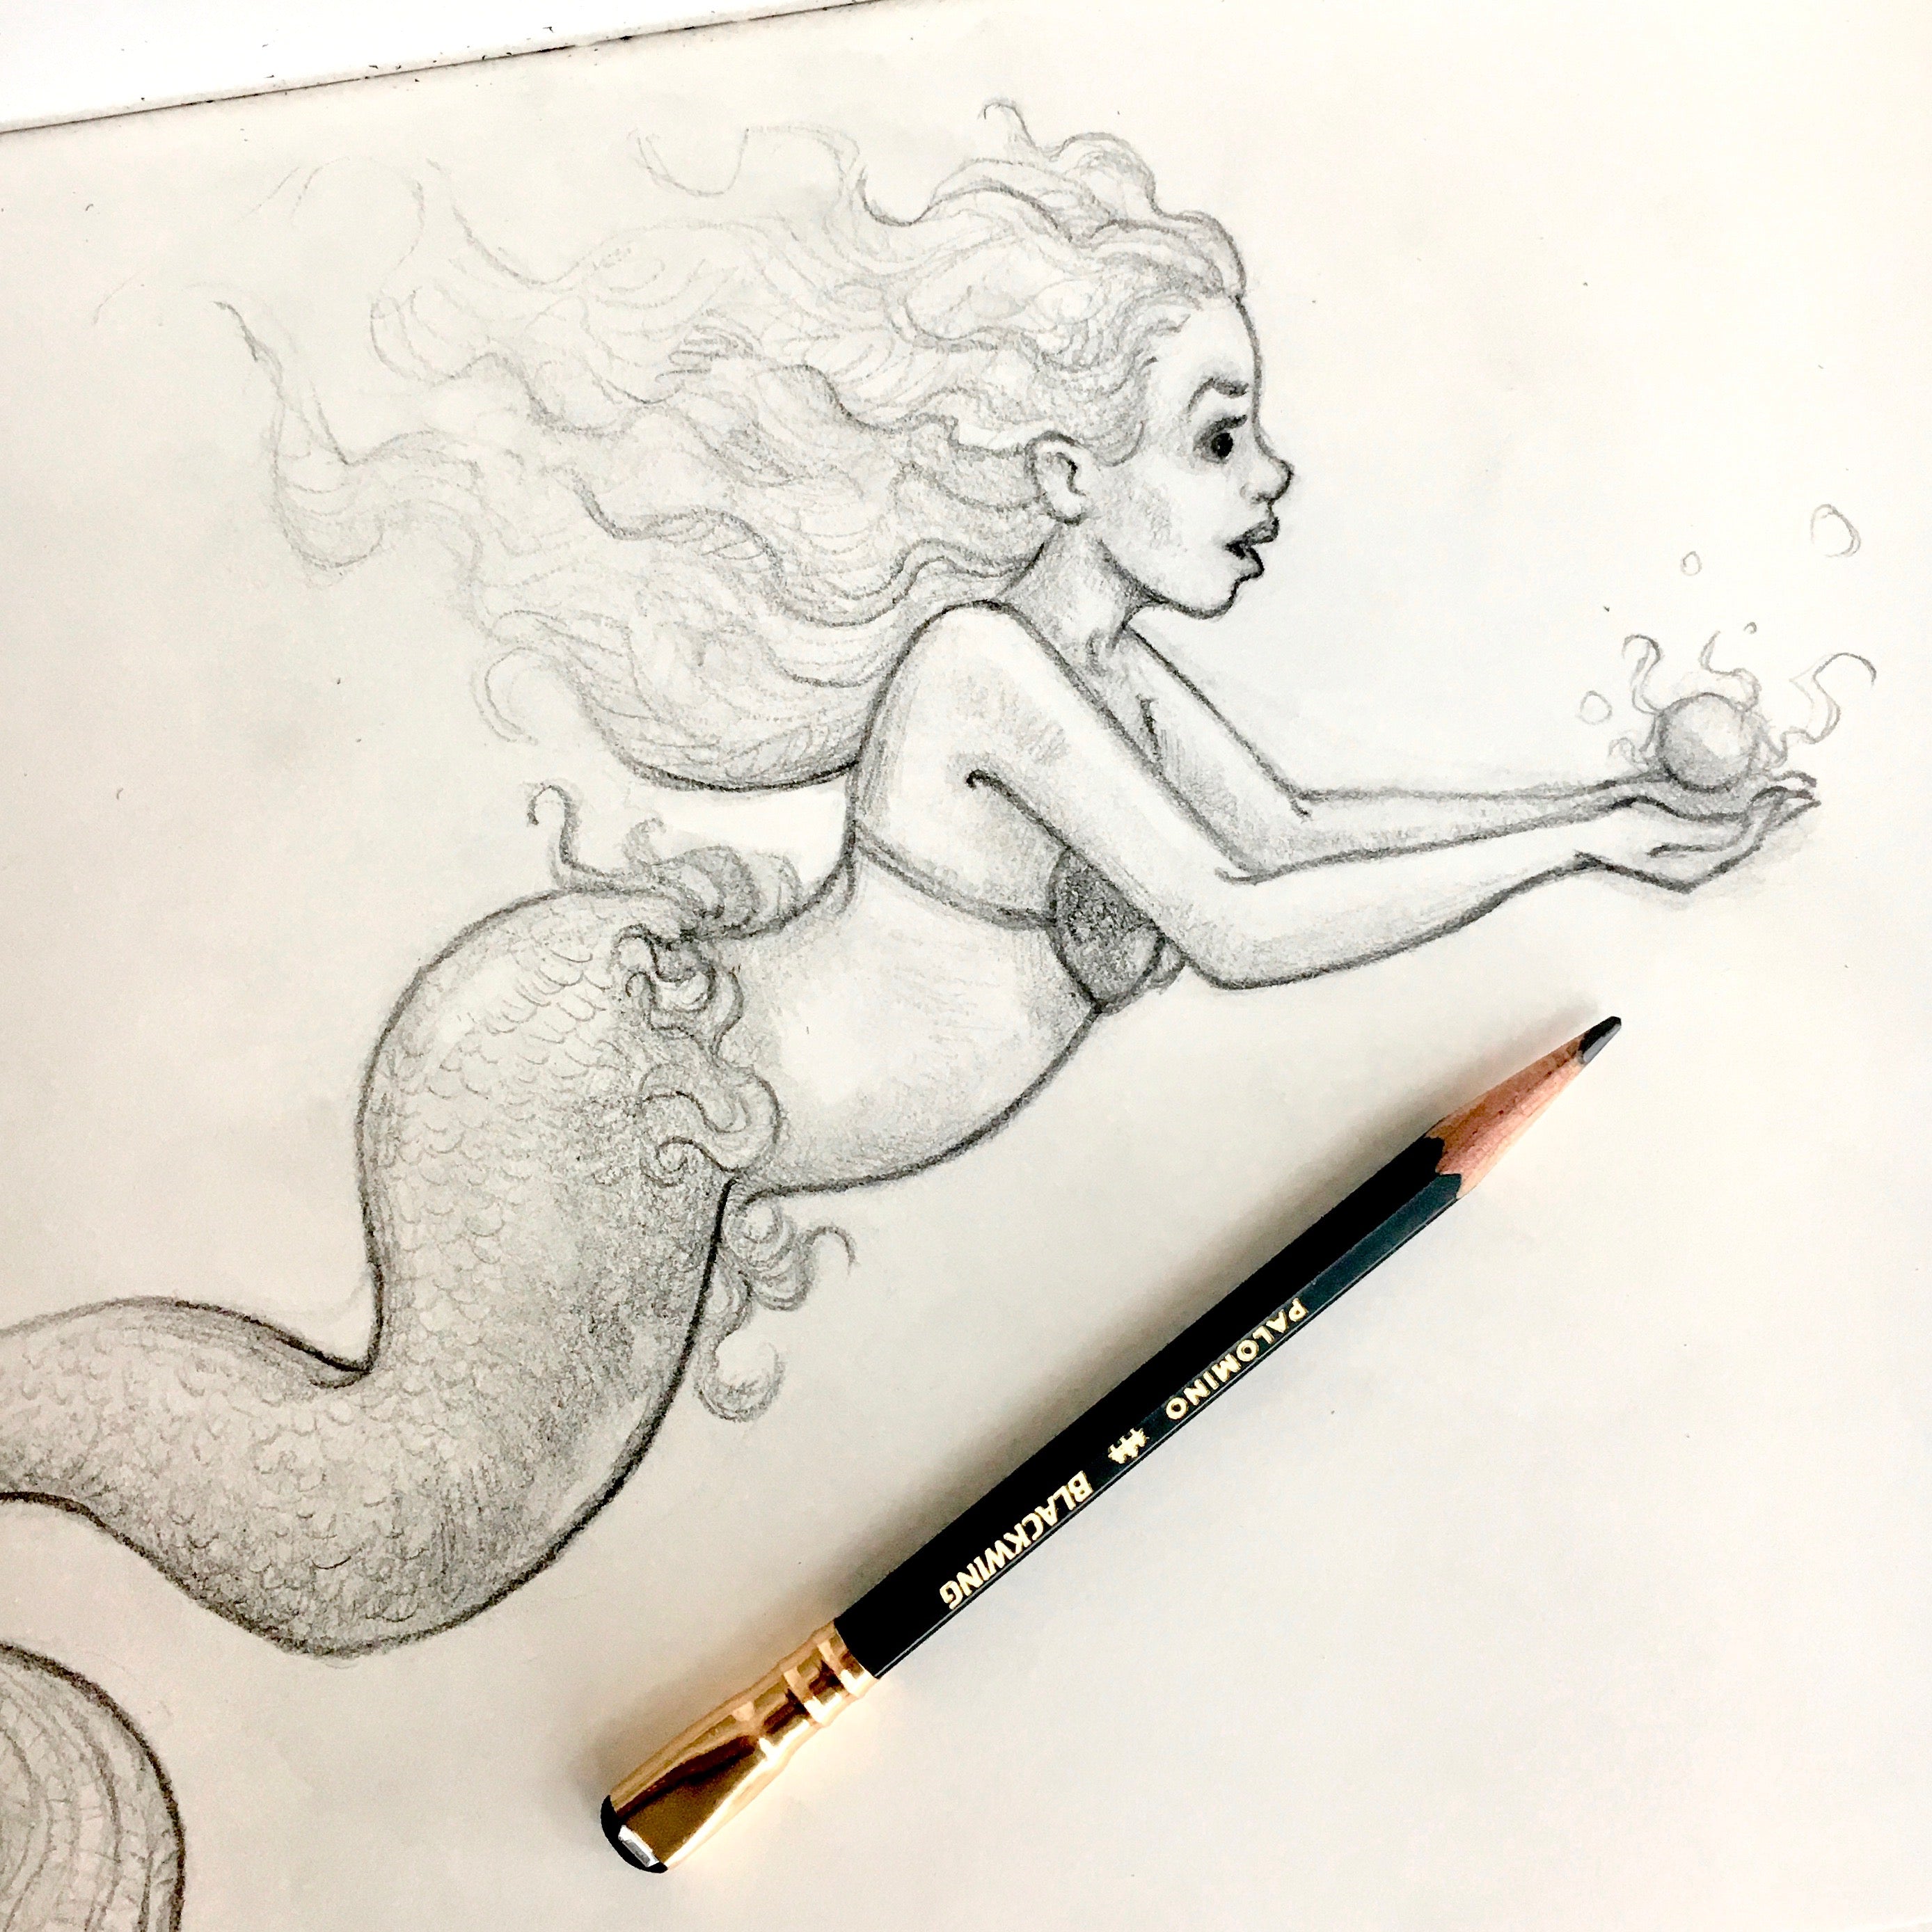 cool drawings of mermaids